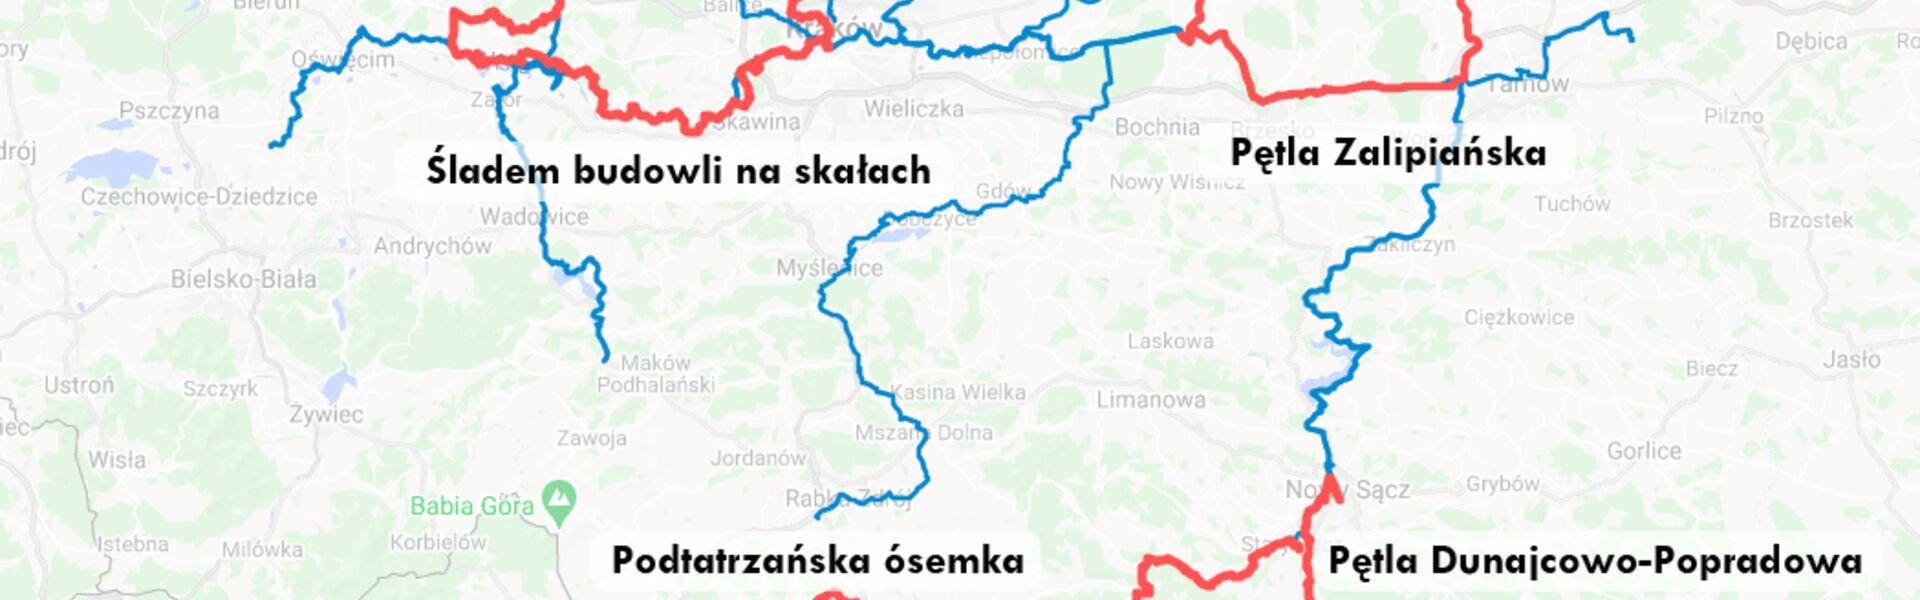 Mapa wycieczki po VeloMałopolska razem z Outdoor Magazyn